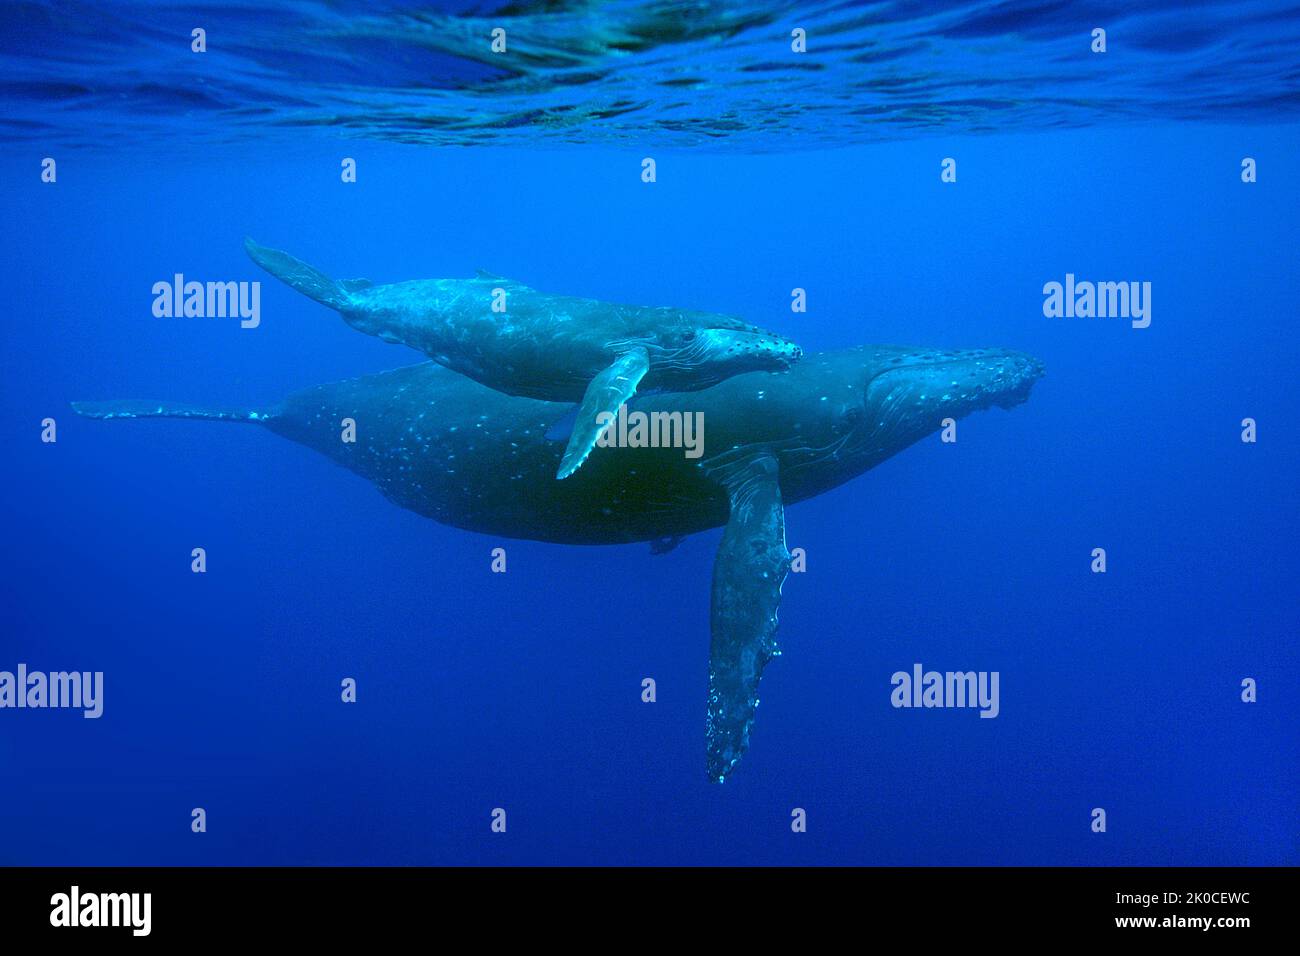 Baleine à bosse (Megaptera novaeangliae) avec veau, Silverbanks, République dominicaine, Caraïbes Banque D'Images